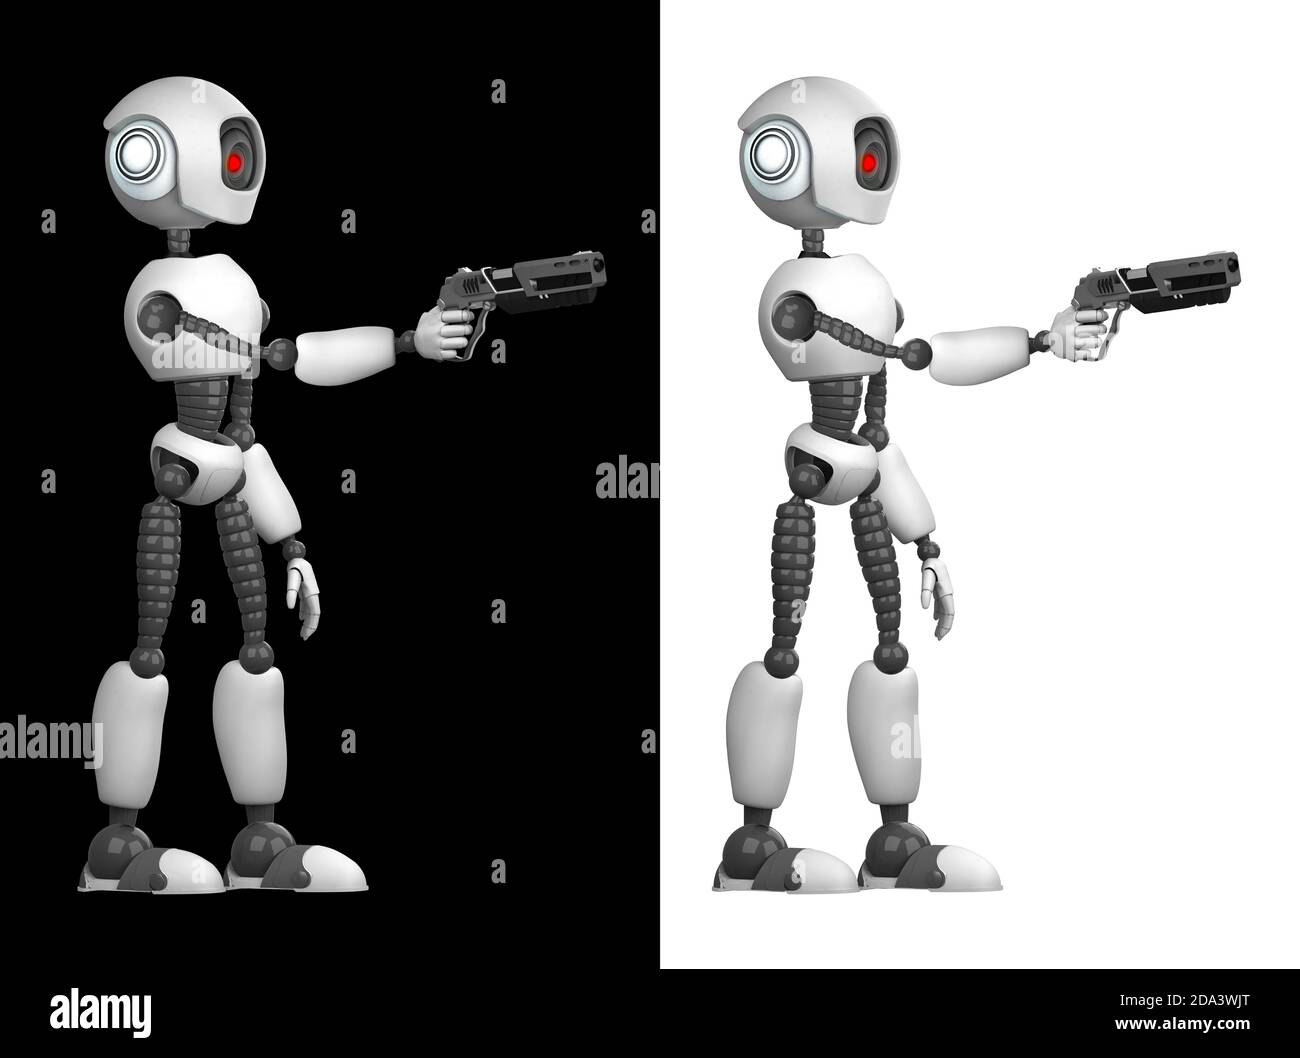 Un robot humanoïde agressif avec une arme dans ses mains. Isolé sur fond noir et blanc. Futur concept avec robotique et intelligence artificielle Banque D'Images